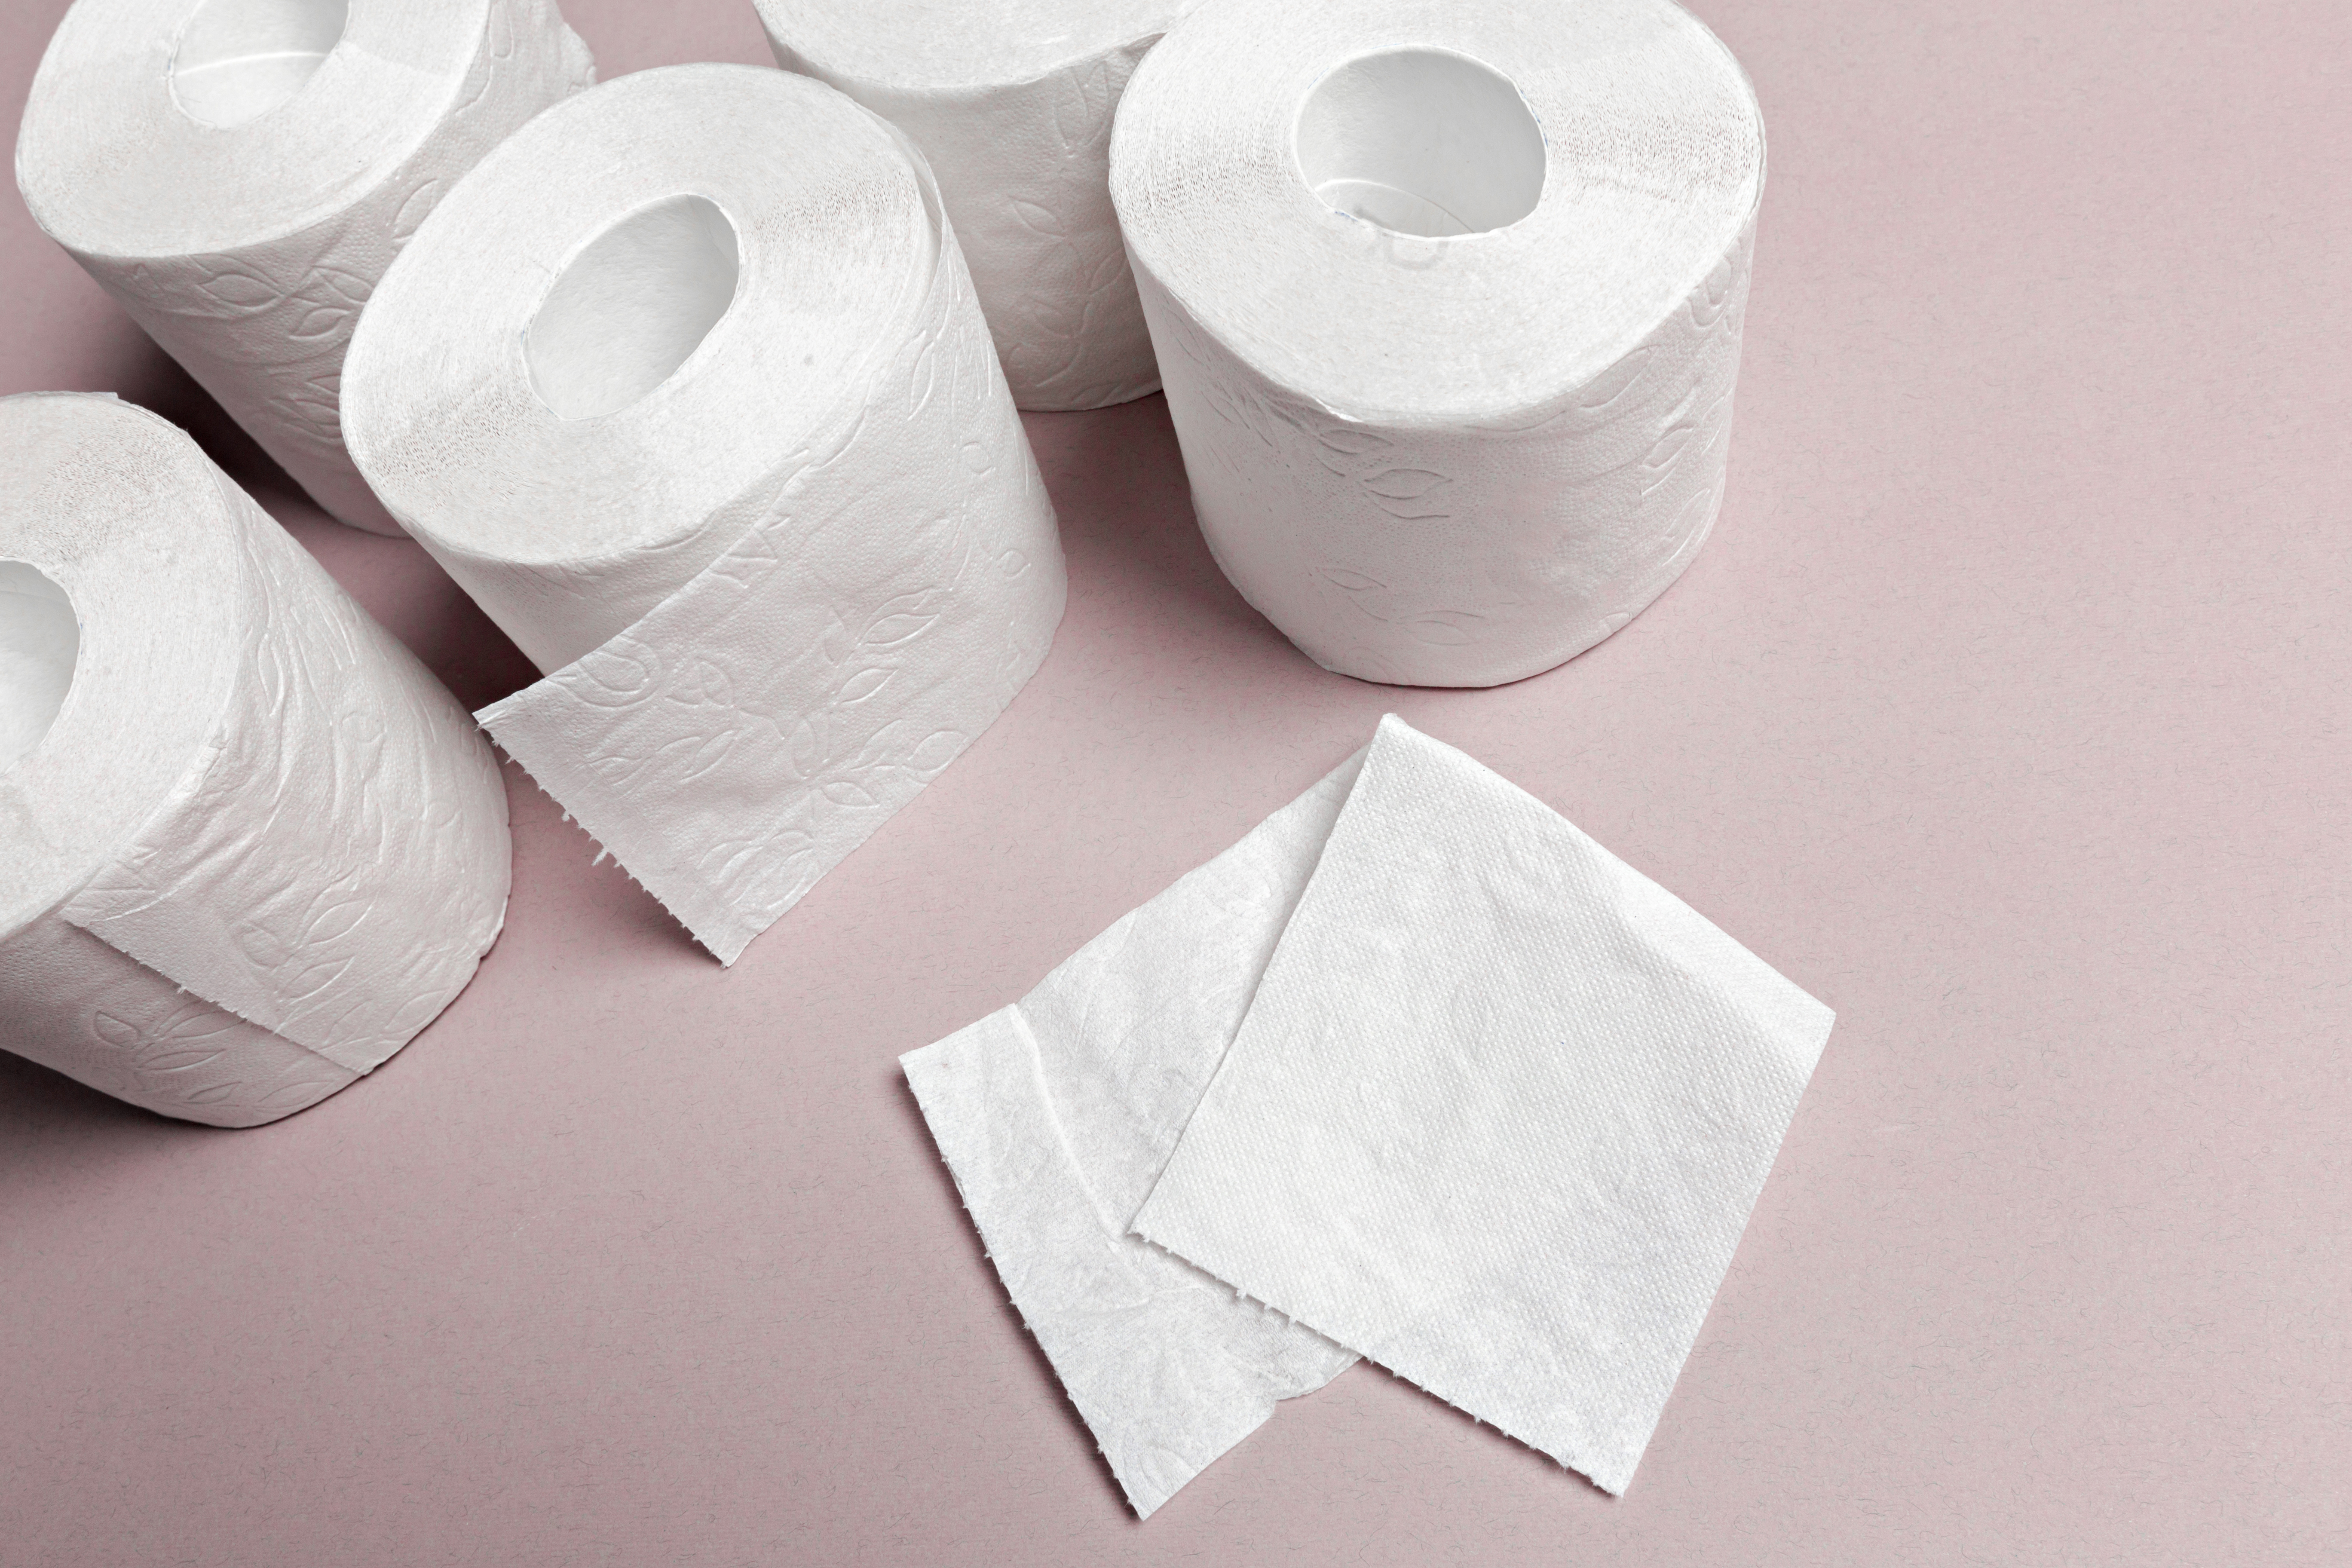 Бизнесмен из Югры предложил делать туалетную бумагу из секретных документов организаций